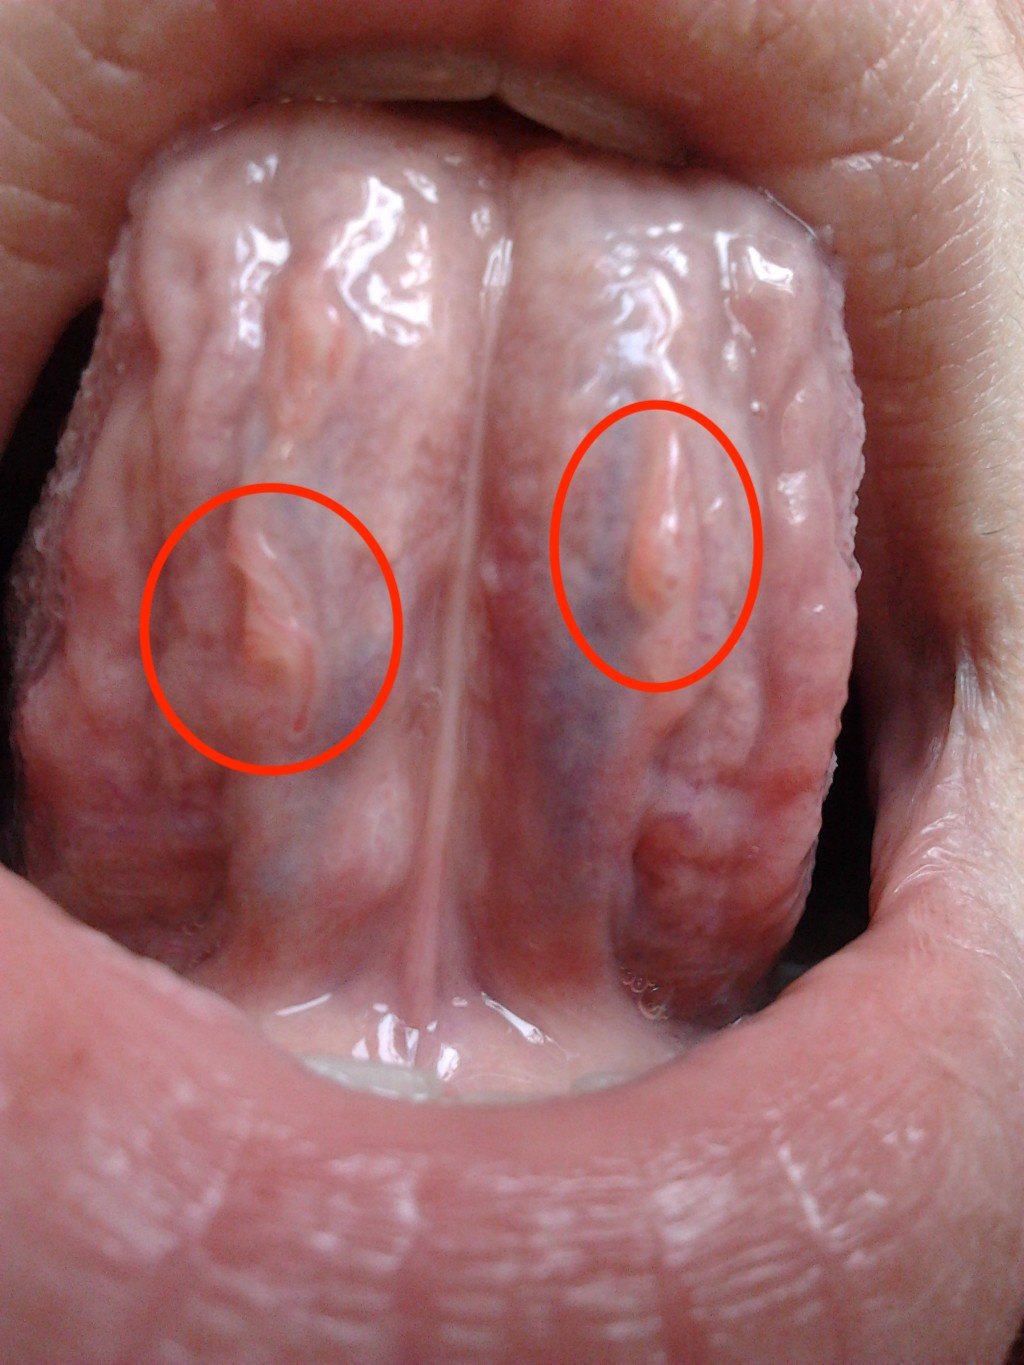 舌下长刺刺到底是不是尖锐湿疣【图片内容可能使您不适,请谨慎点击】